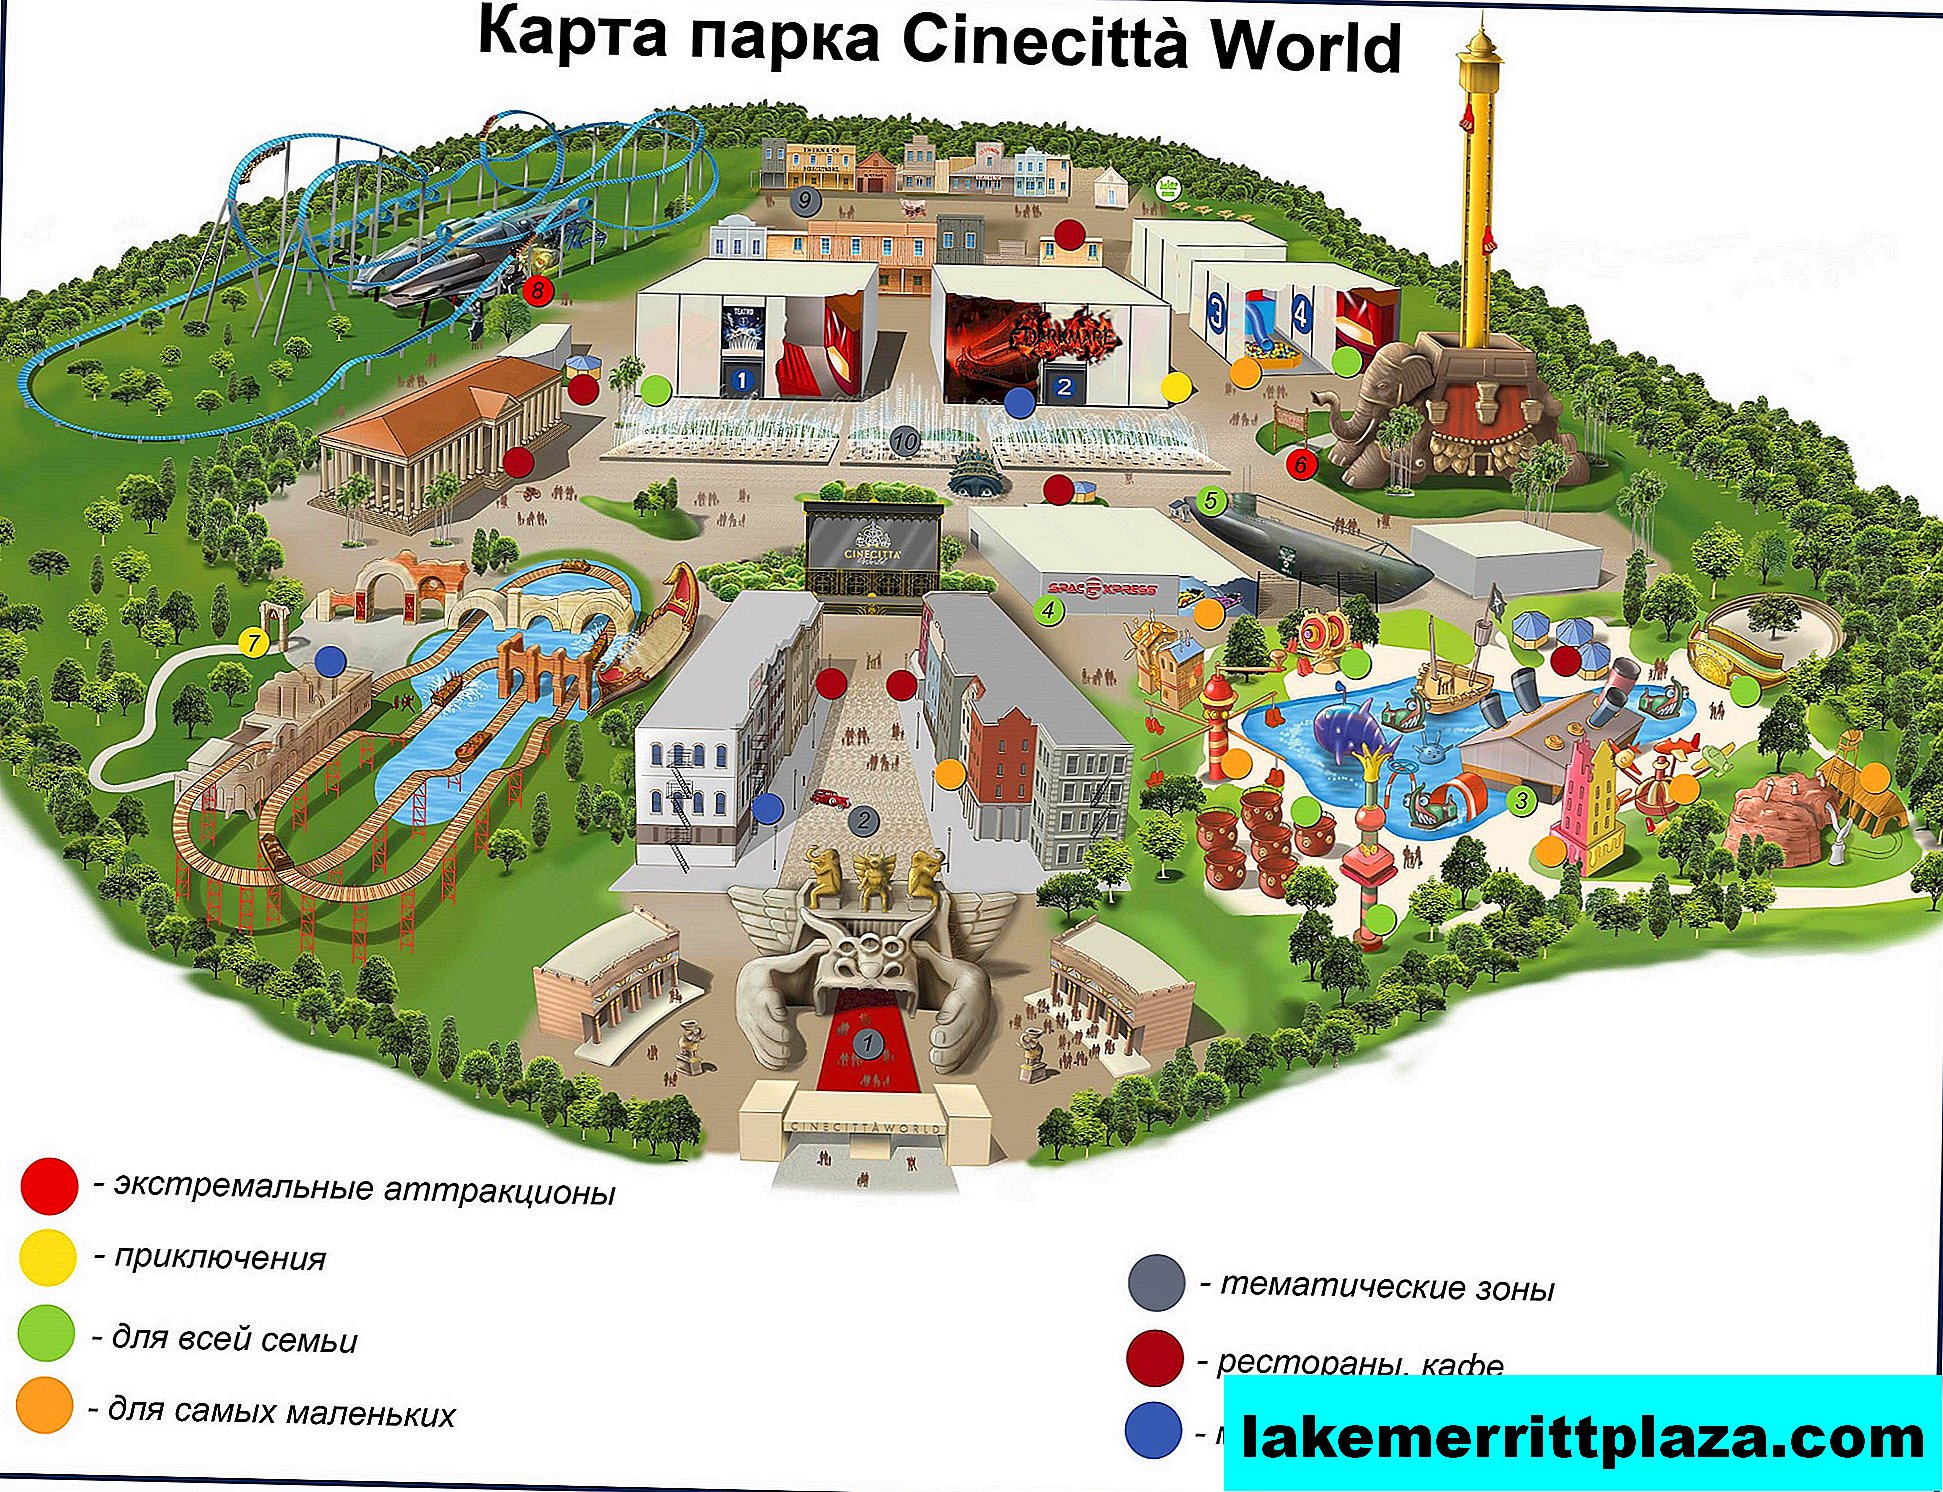 Cinechitta World - primul parc cinematografic din Italia pentru copii și adulți